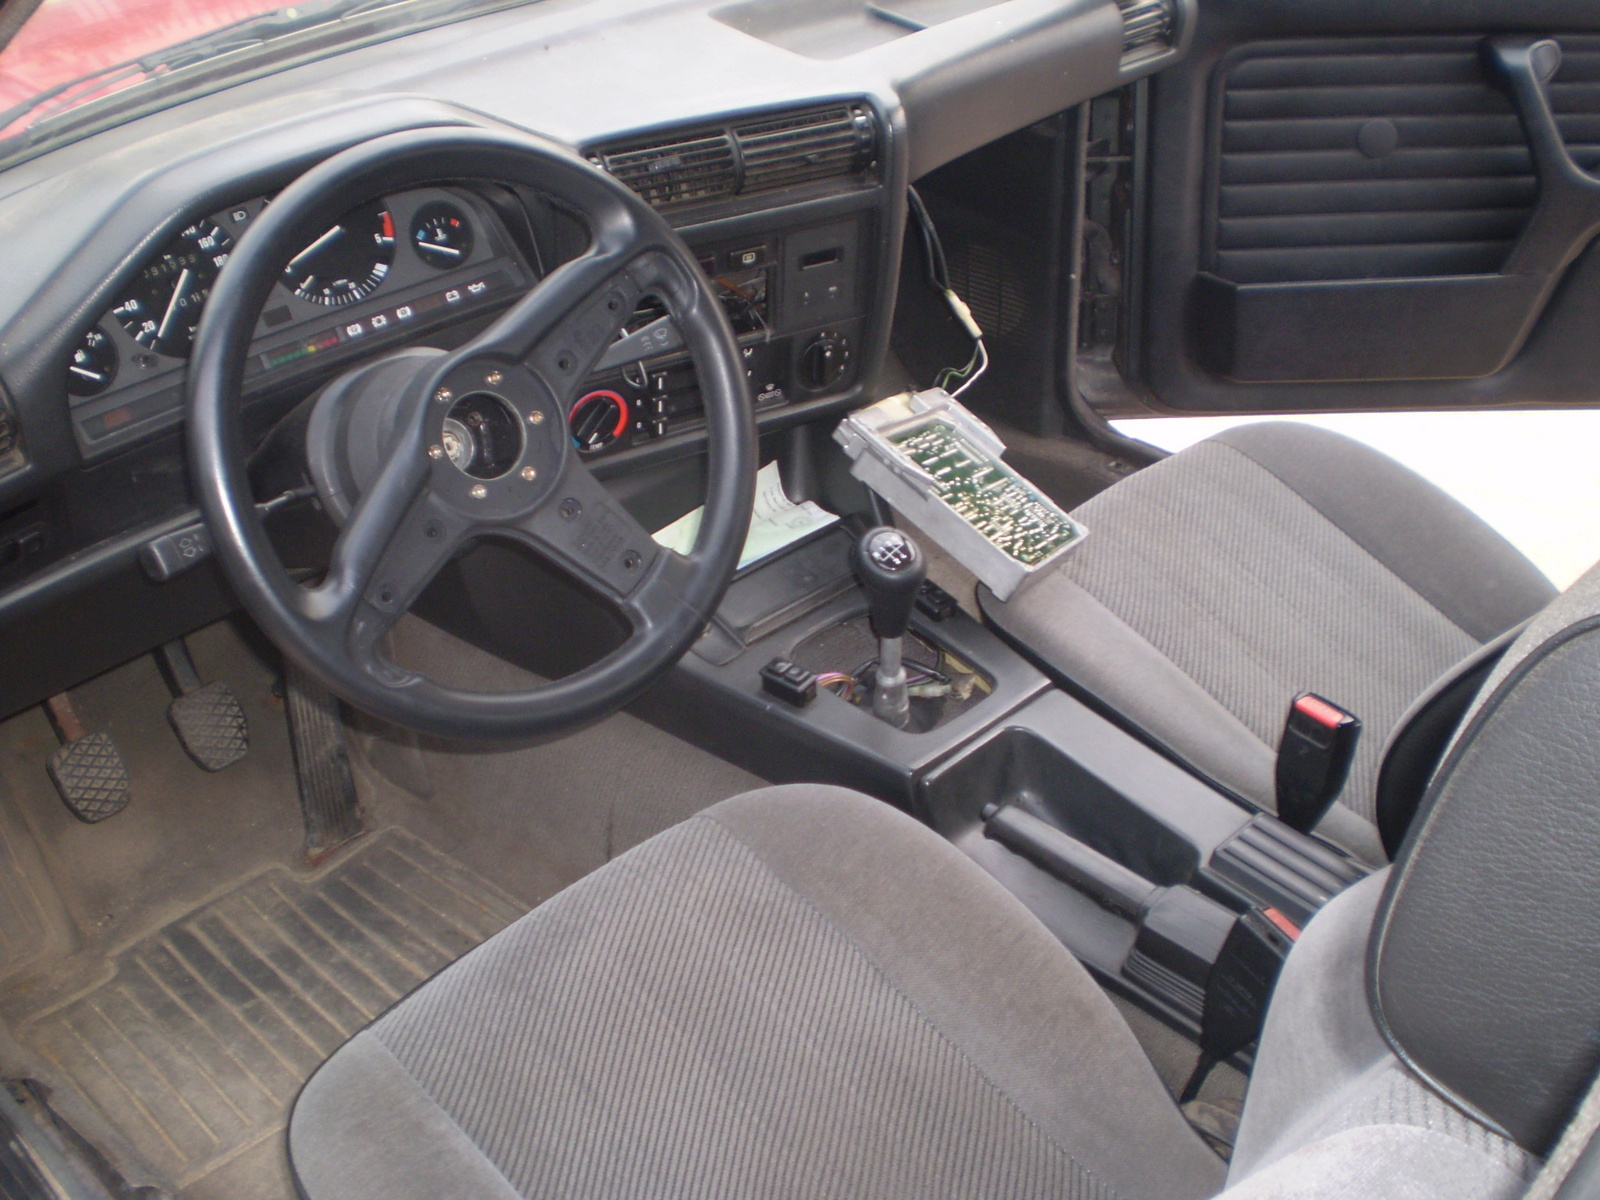 1985 Bmw 325e interior parts #6